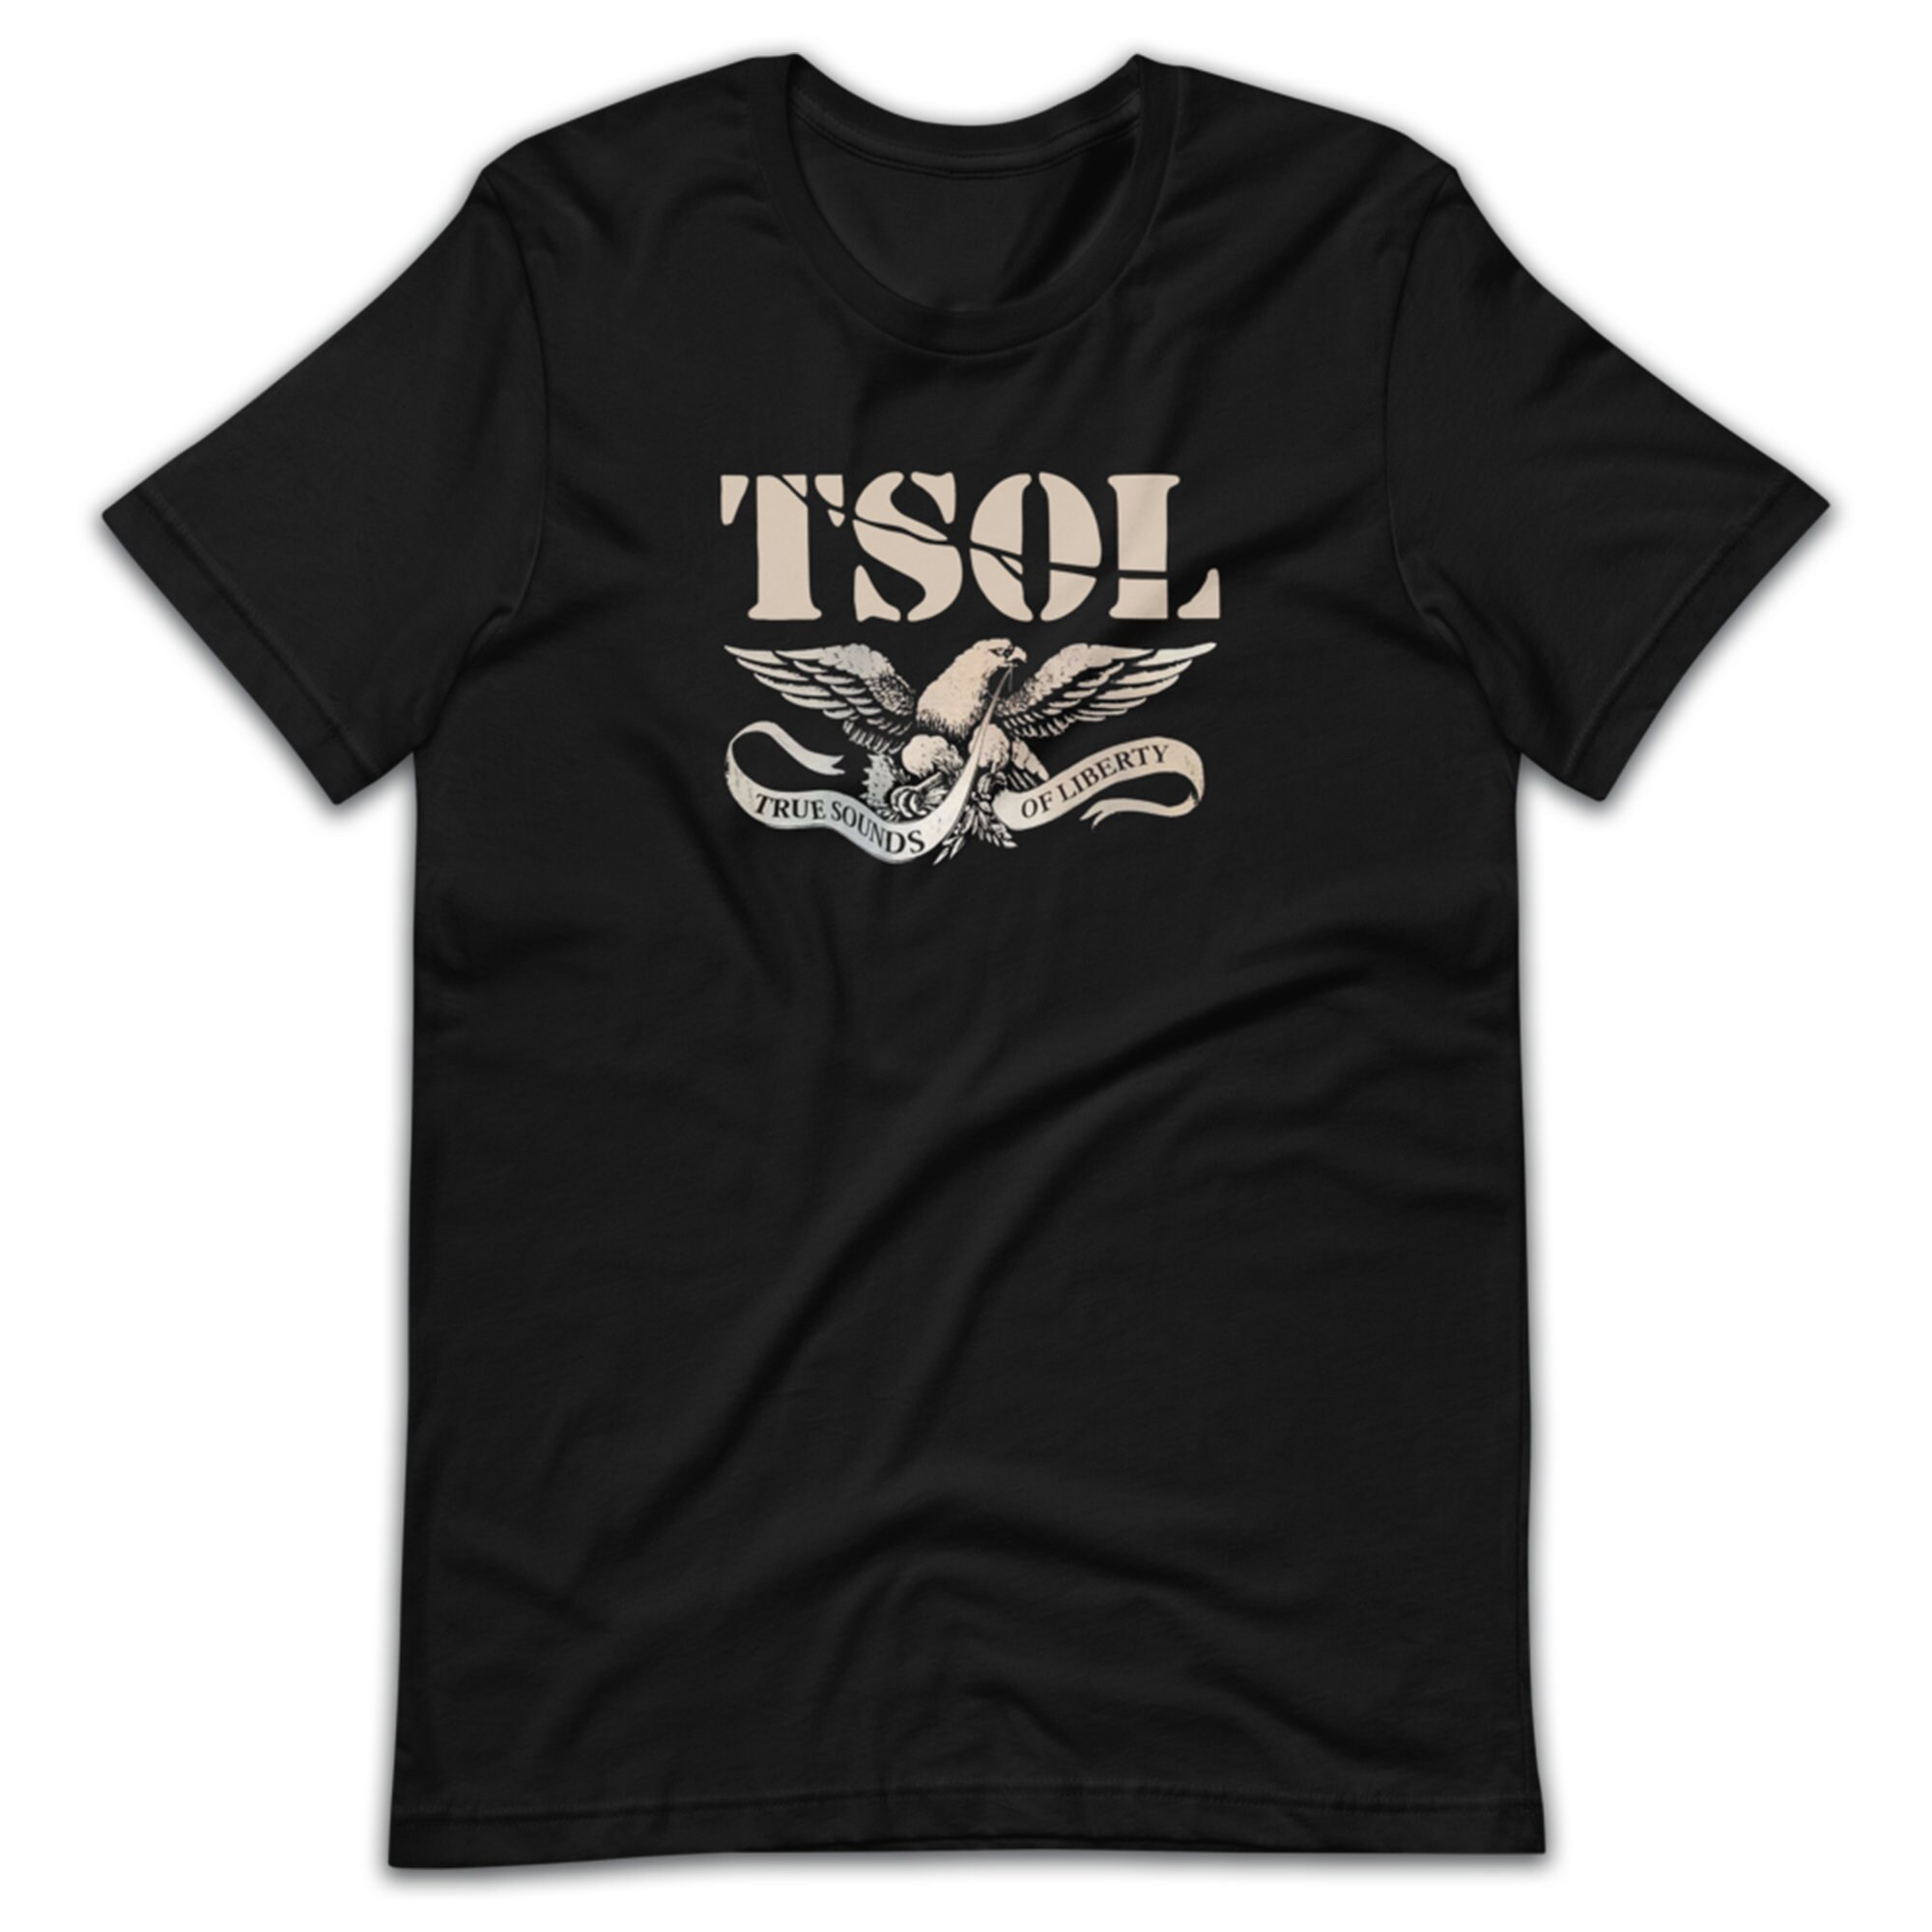 True Sounds of Liberty T Shirt TSOL Punk Rock Band 80s - Etsy